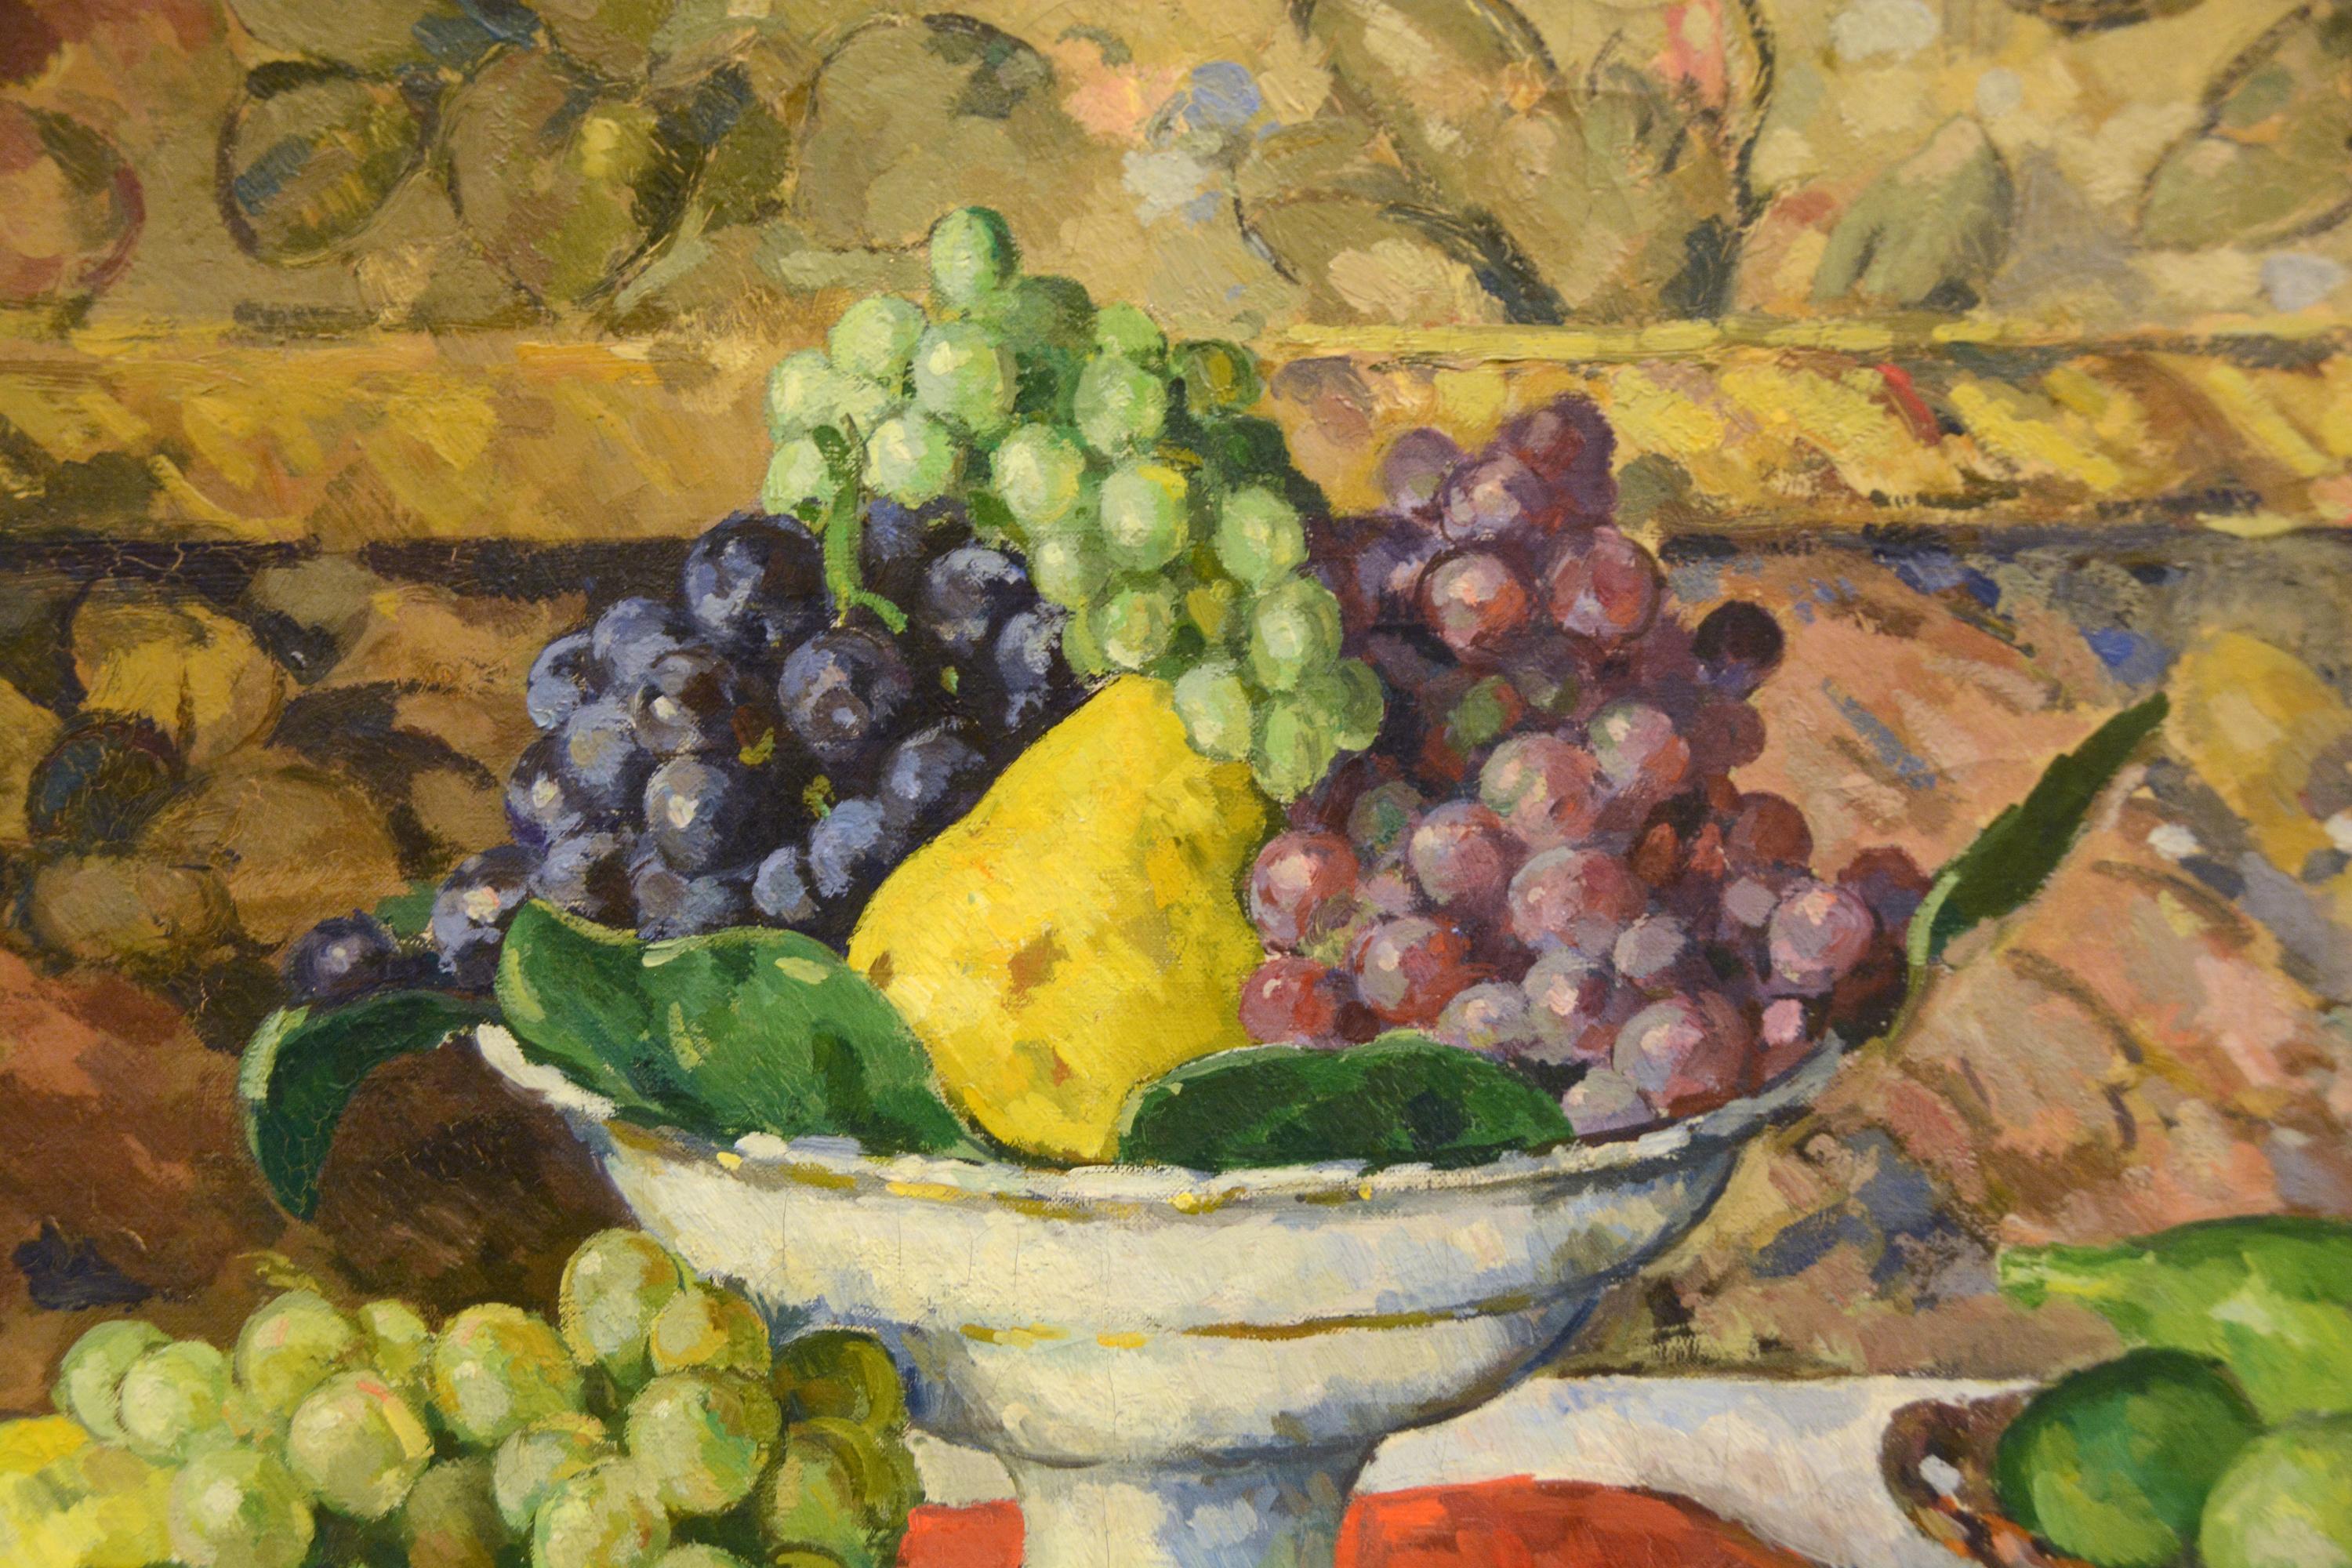 Fruits sur une table, compotier et plateau - Painting by Albert Andre